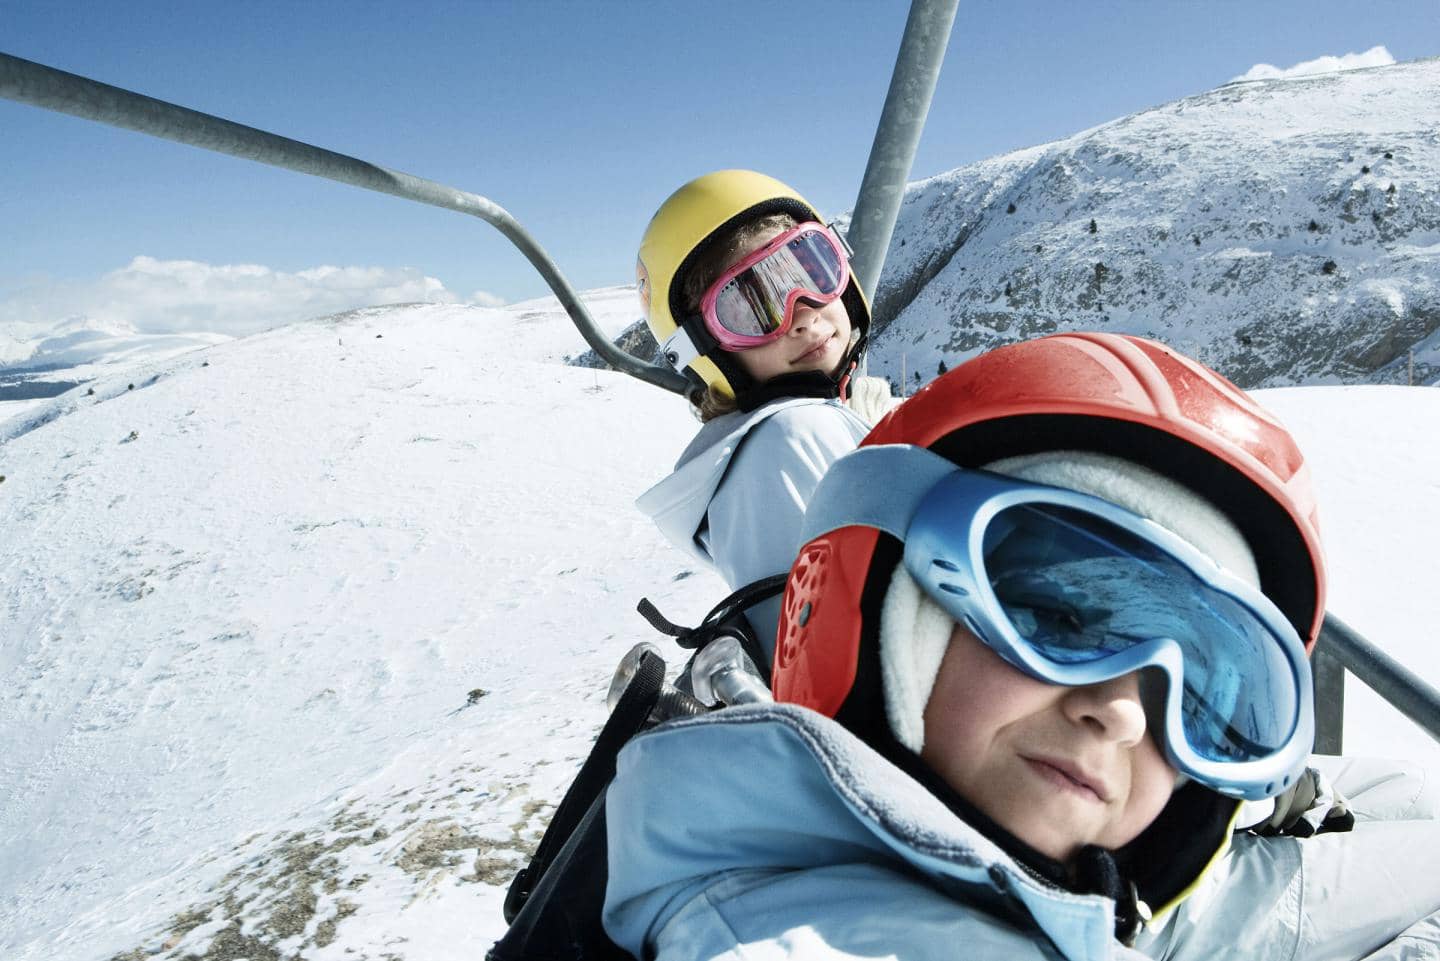 Kom godt på skiferie - børn i skilift med snelandskab i baggrund